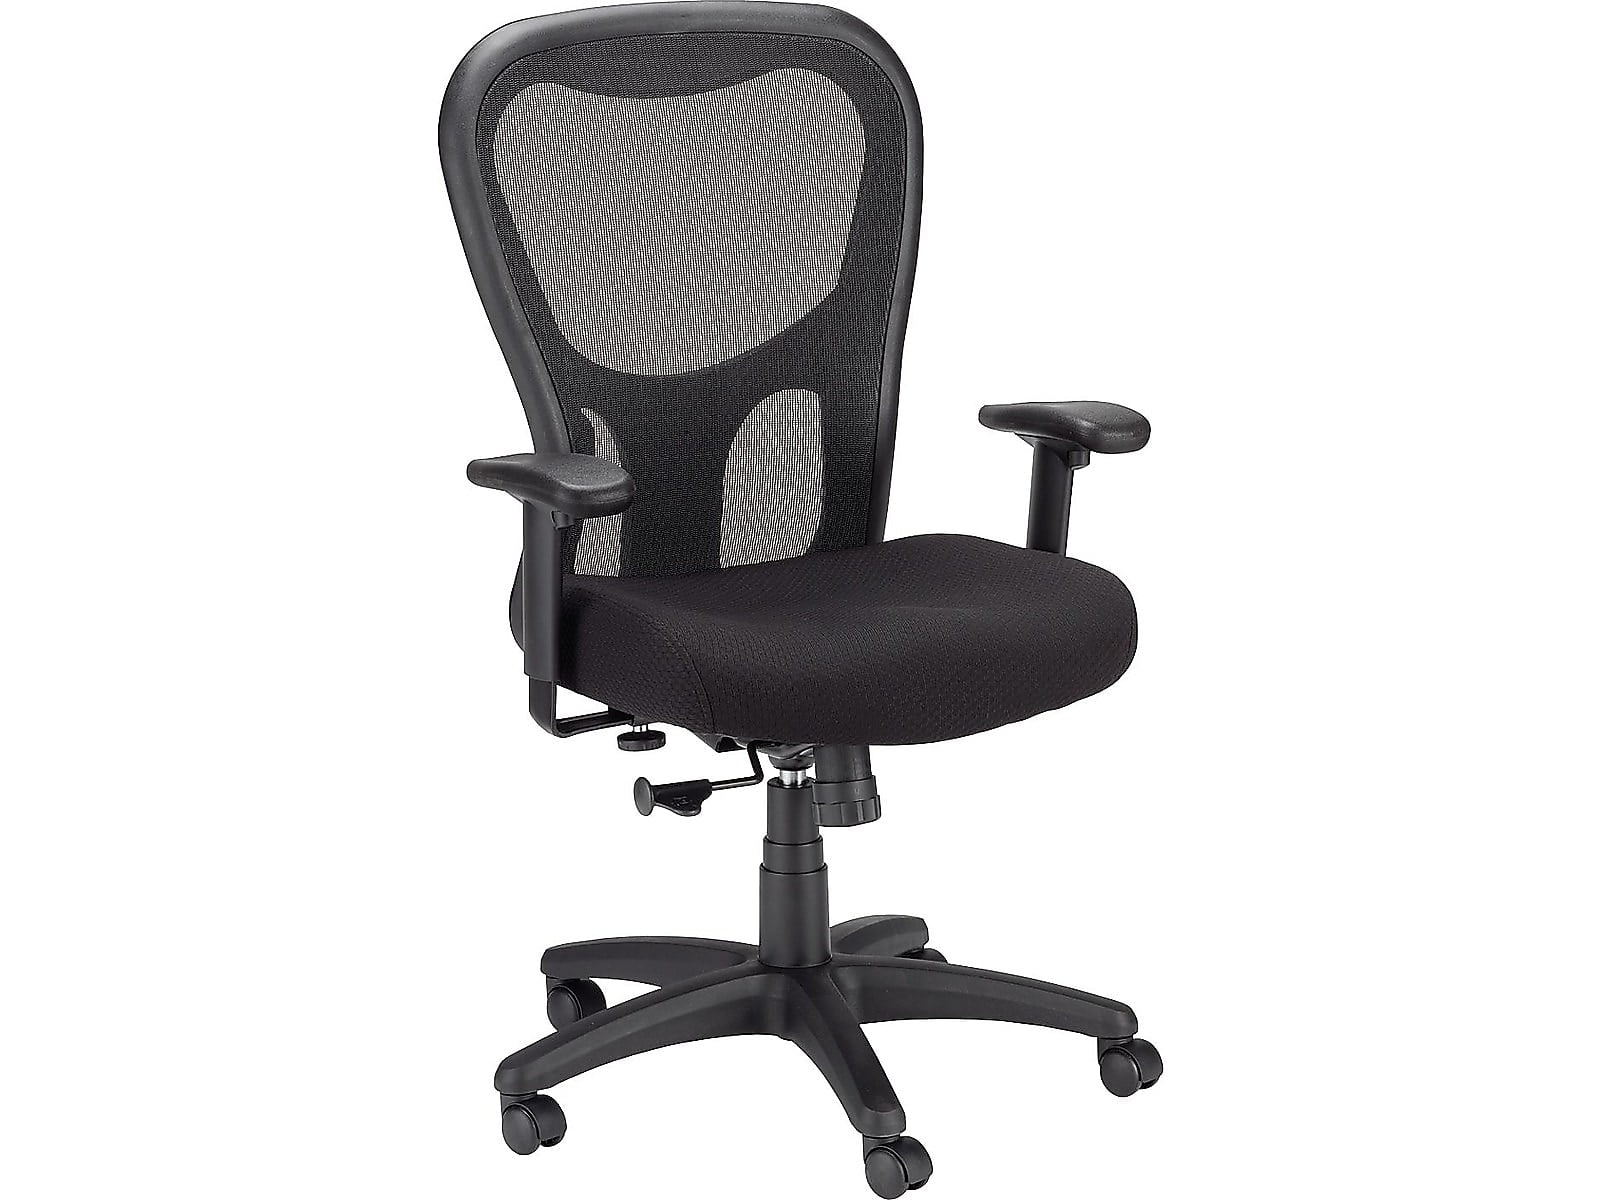 Tempur-Pedic TP9000 Mesh Task Chair Black (TP9000) 324021 - Walmart.com